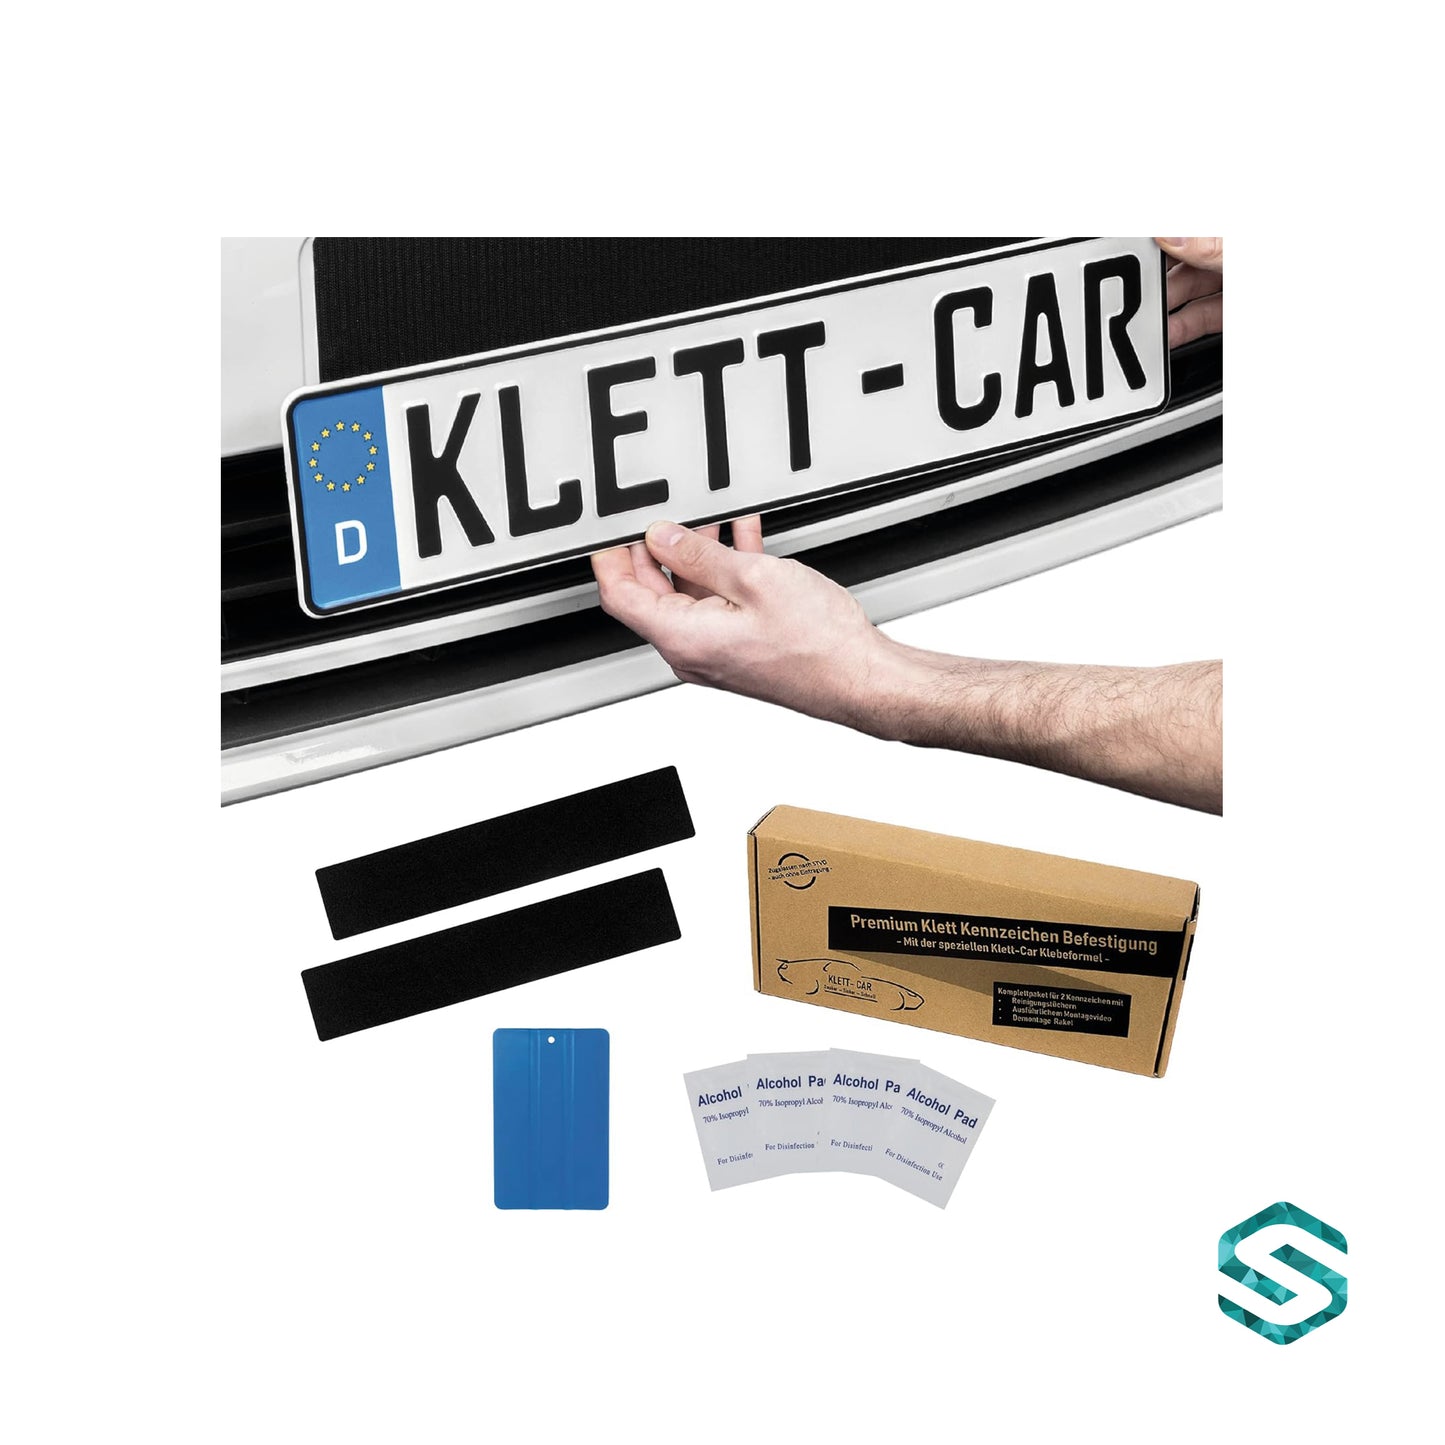 Klett-Car - Premium Klett Kennzeichen Befestigung